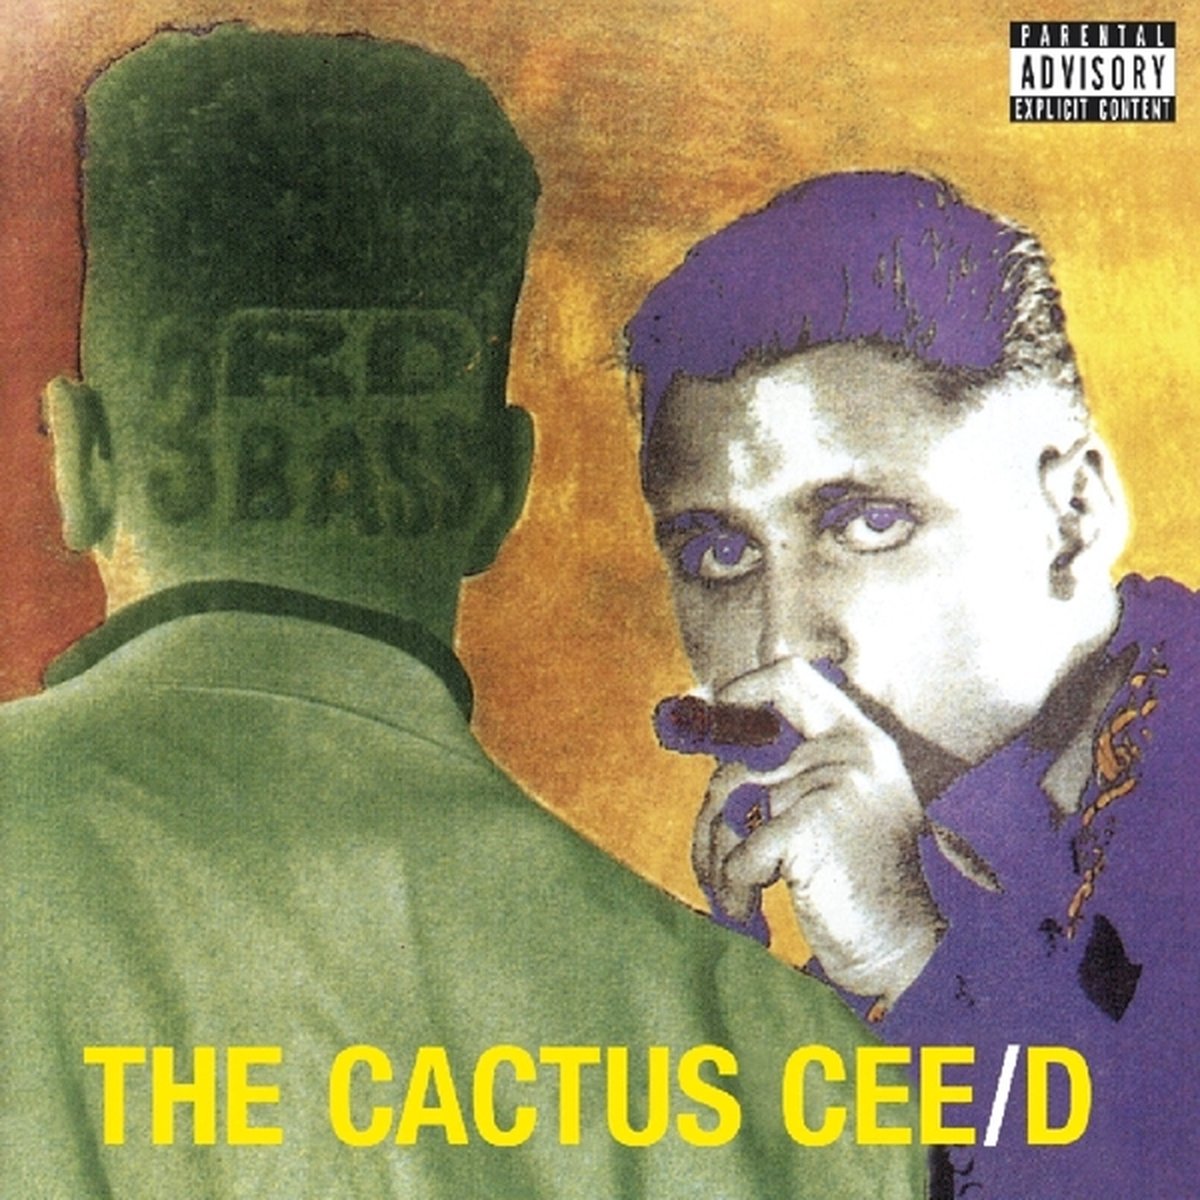 3rd Bass - Cactus Cee/d - 3Rd Bass